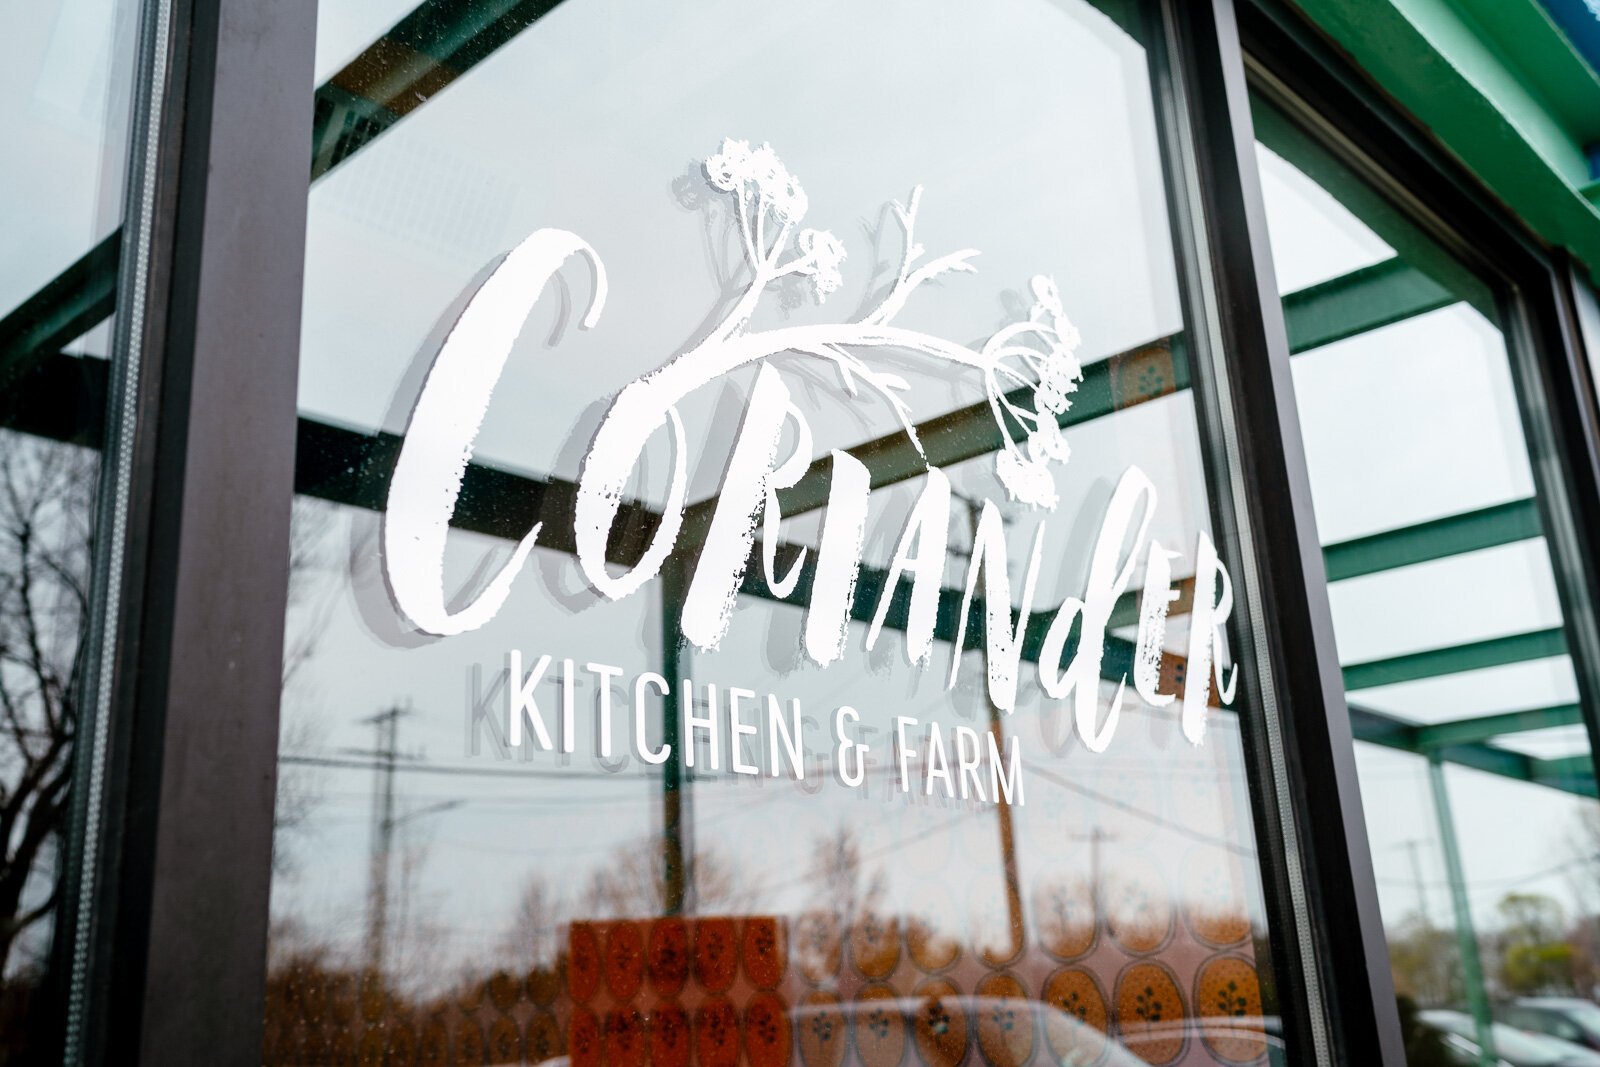 Coriander Kitchen and Farm. Photo by Nick Hagen